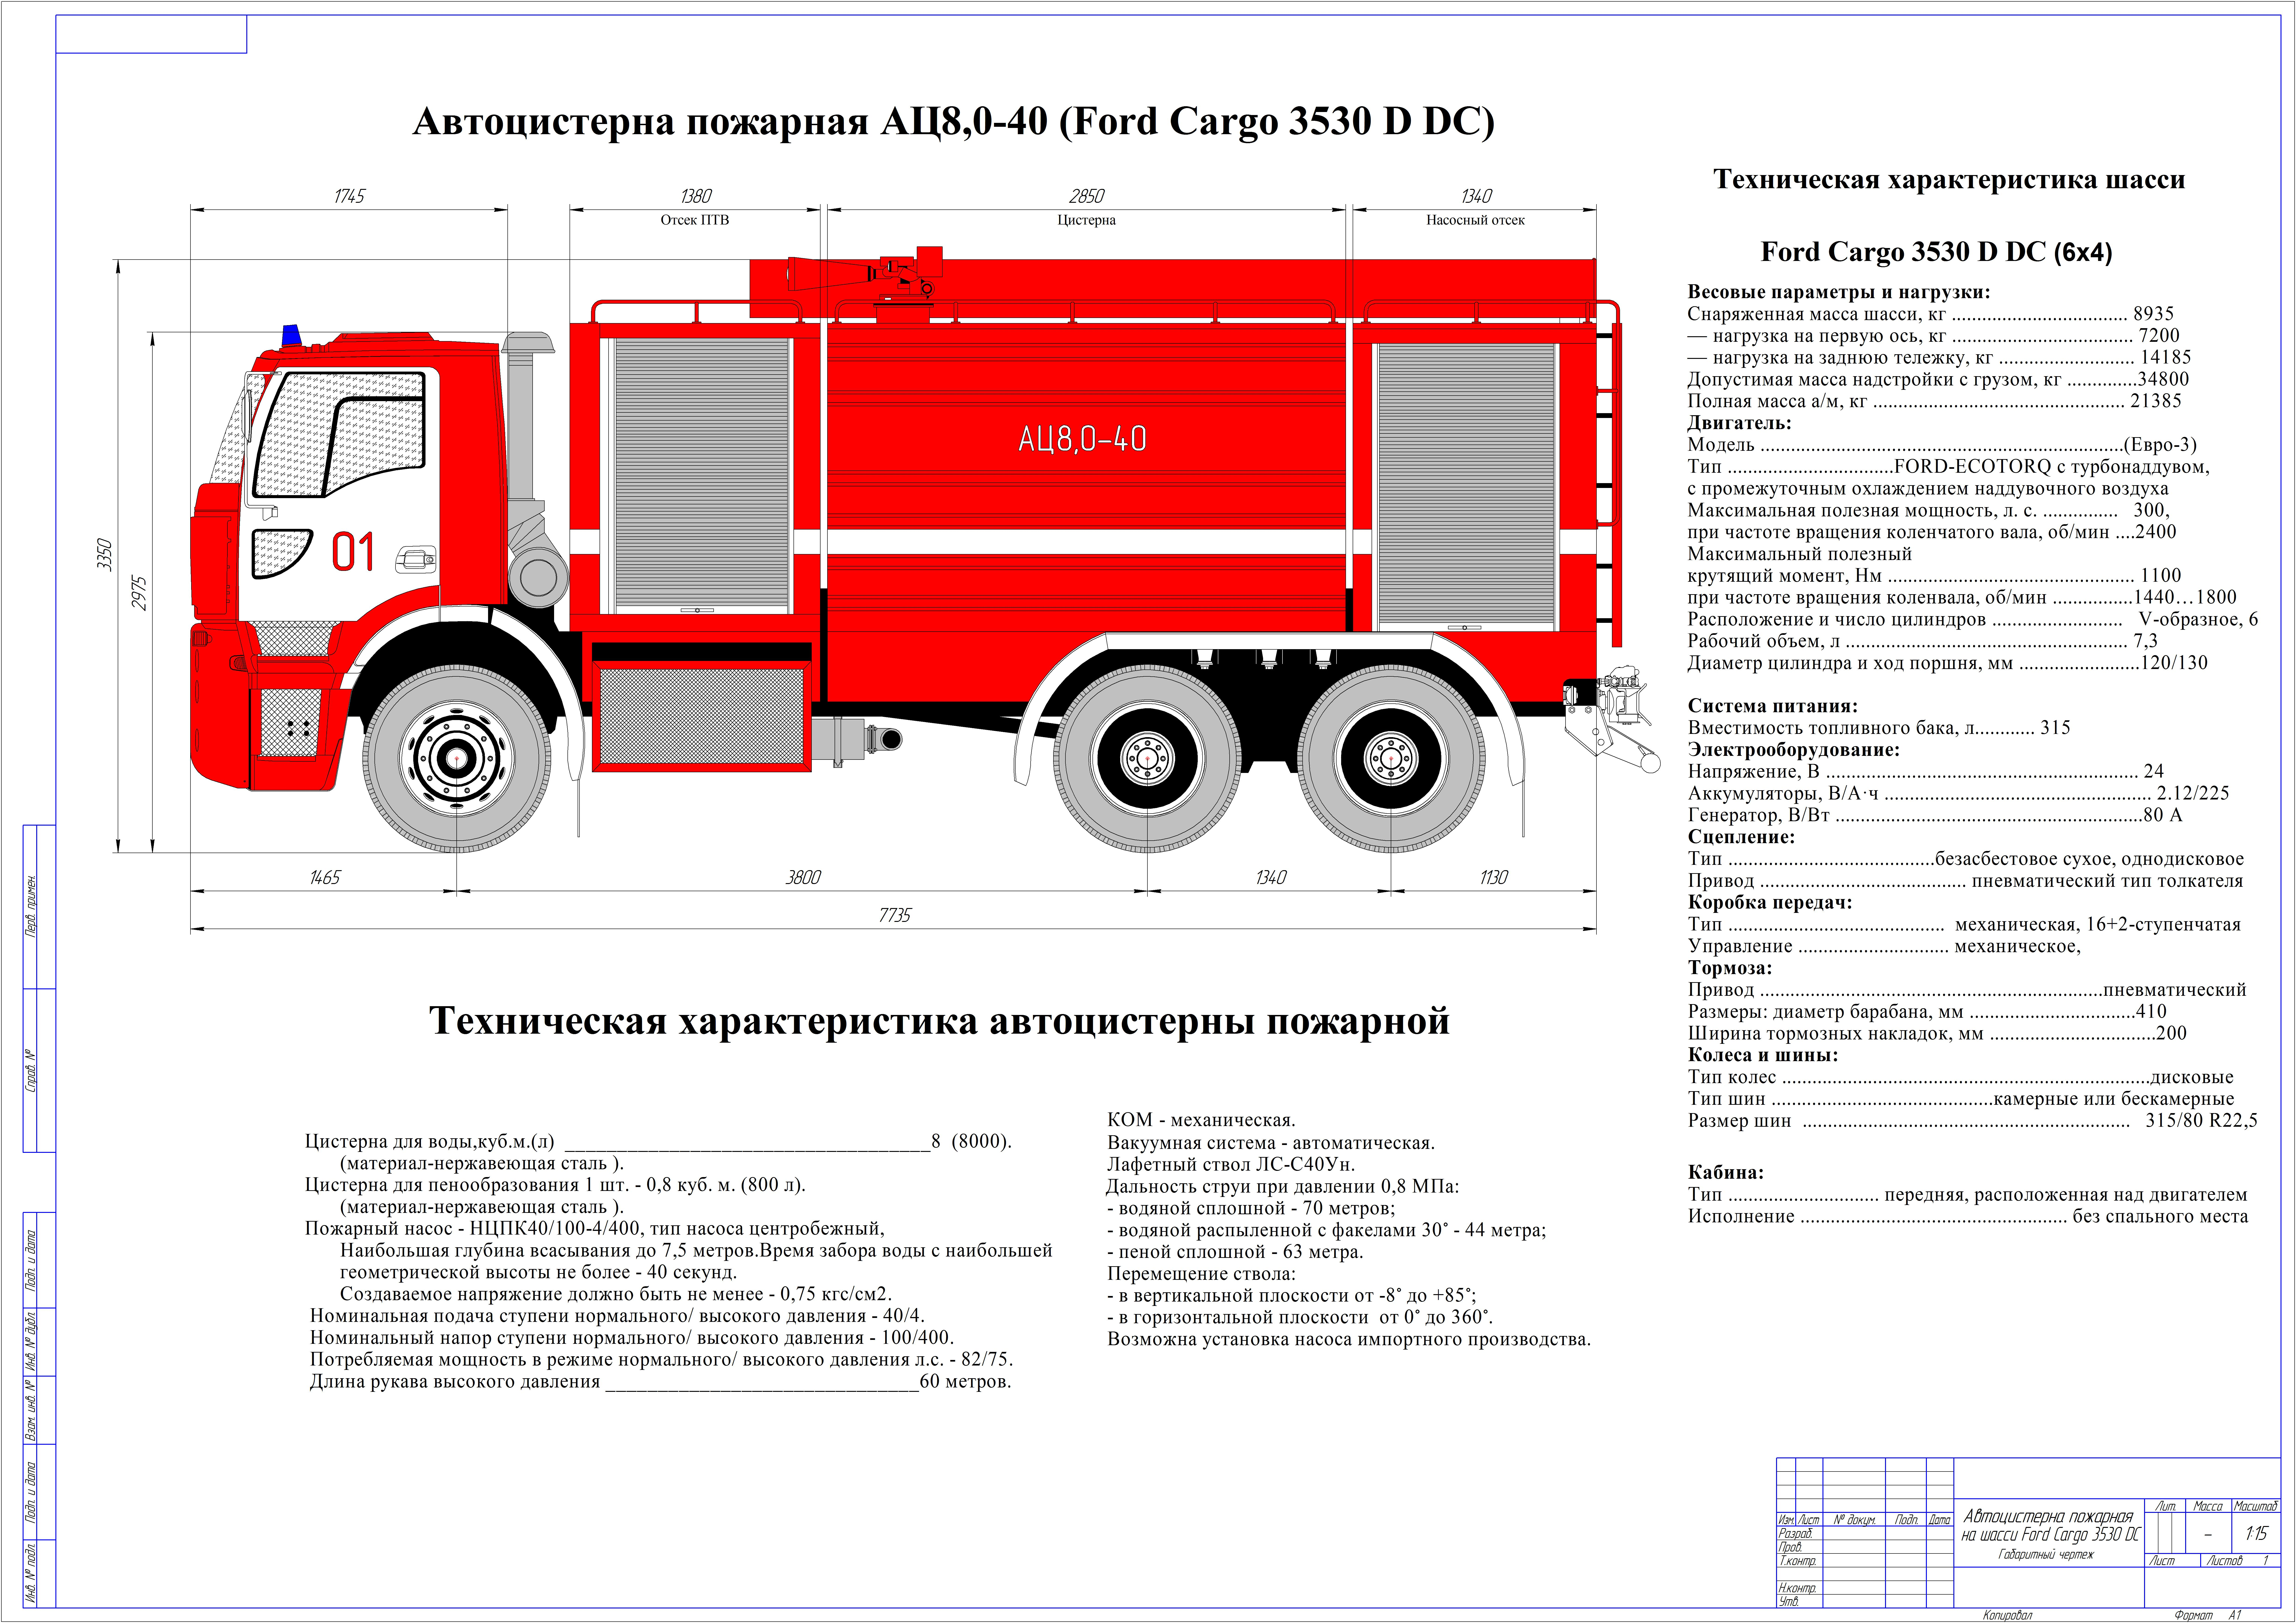 ТТХ пожарных автомобилей АЦ-40 КАМАЗ